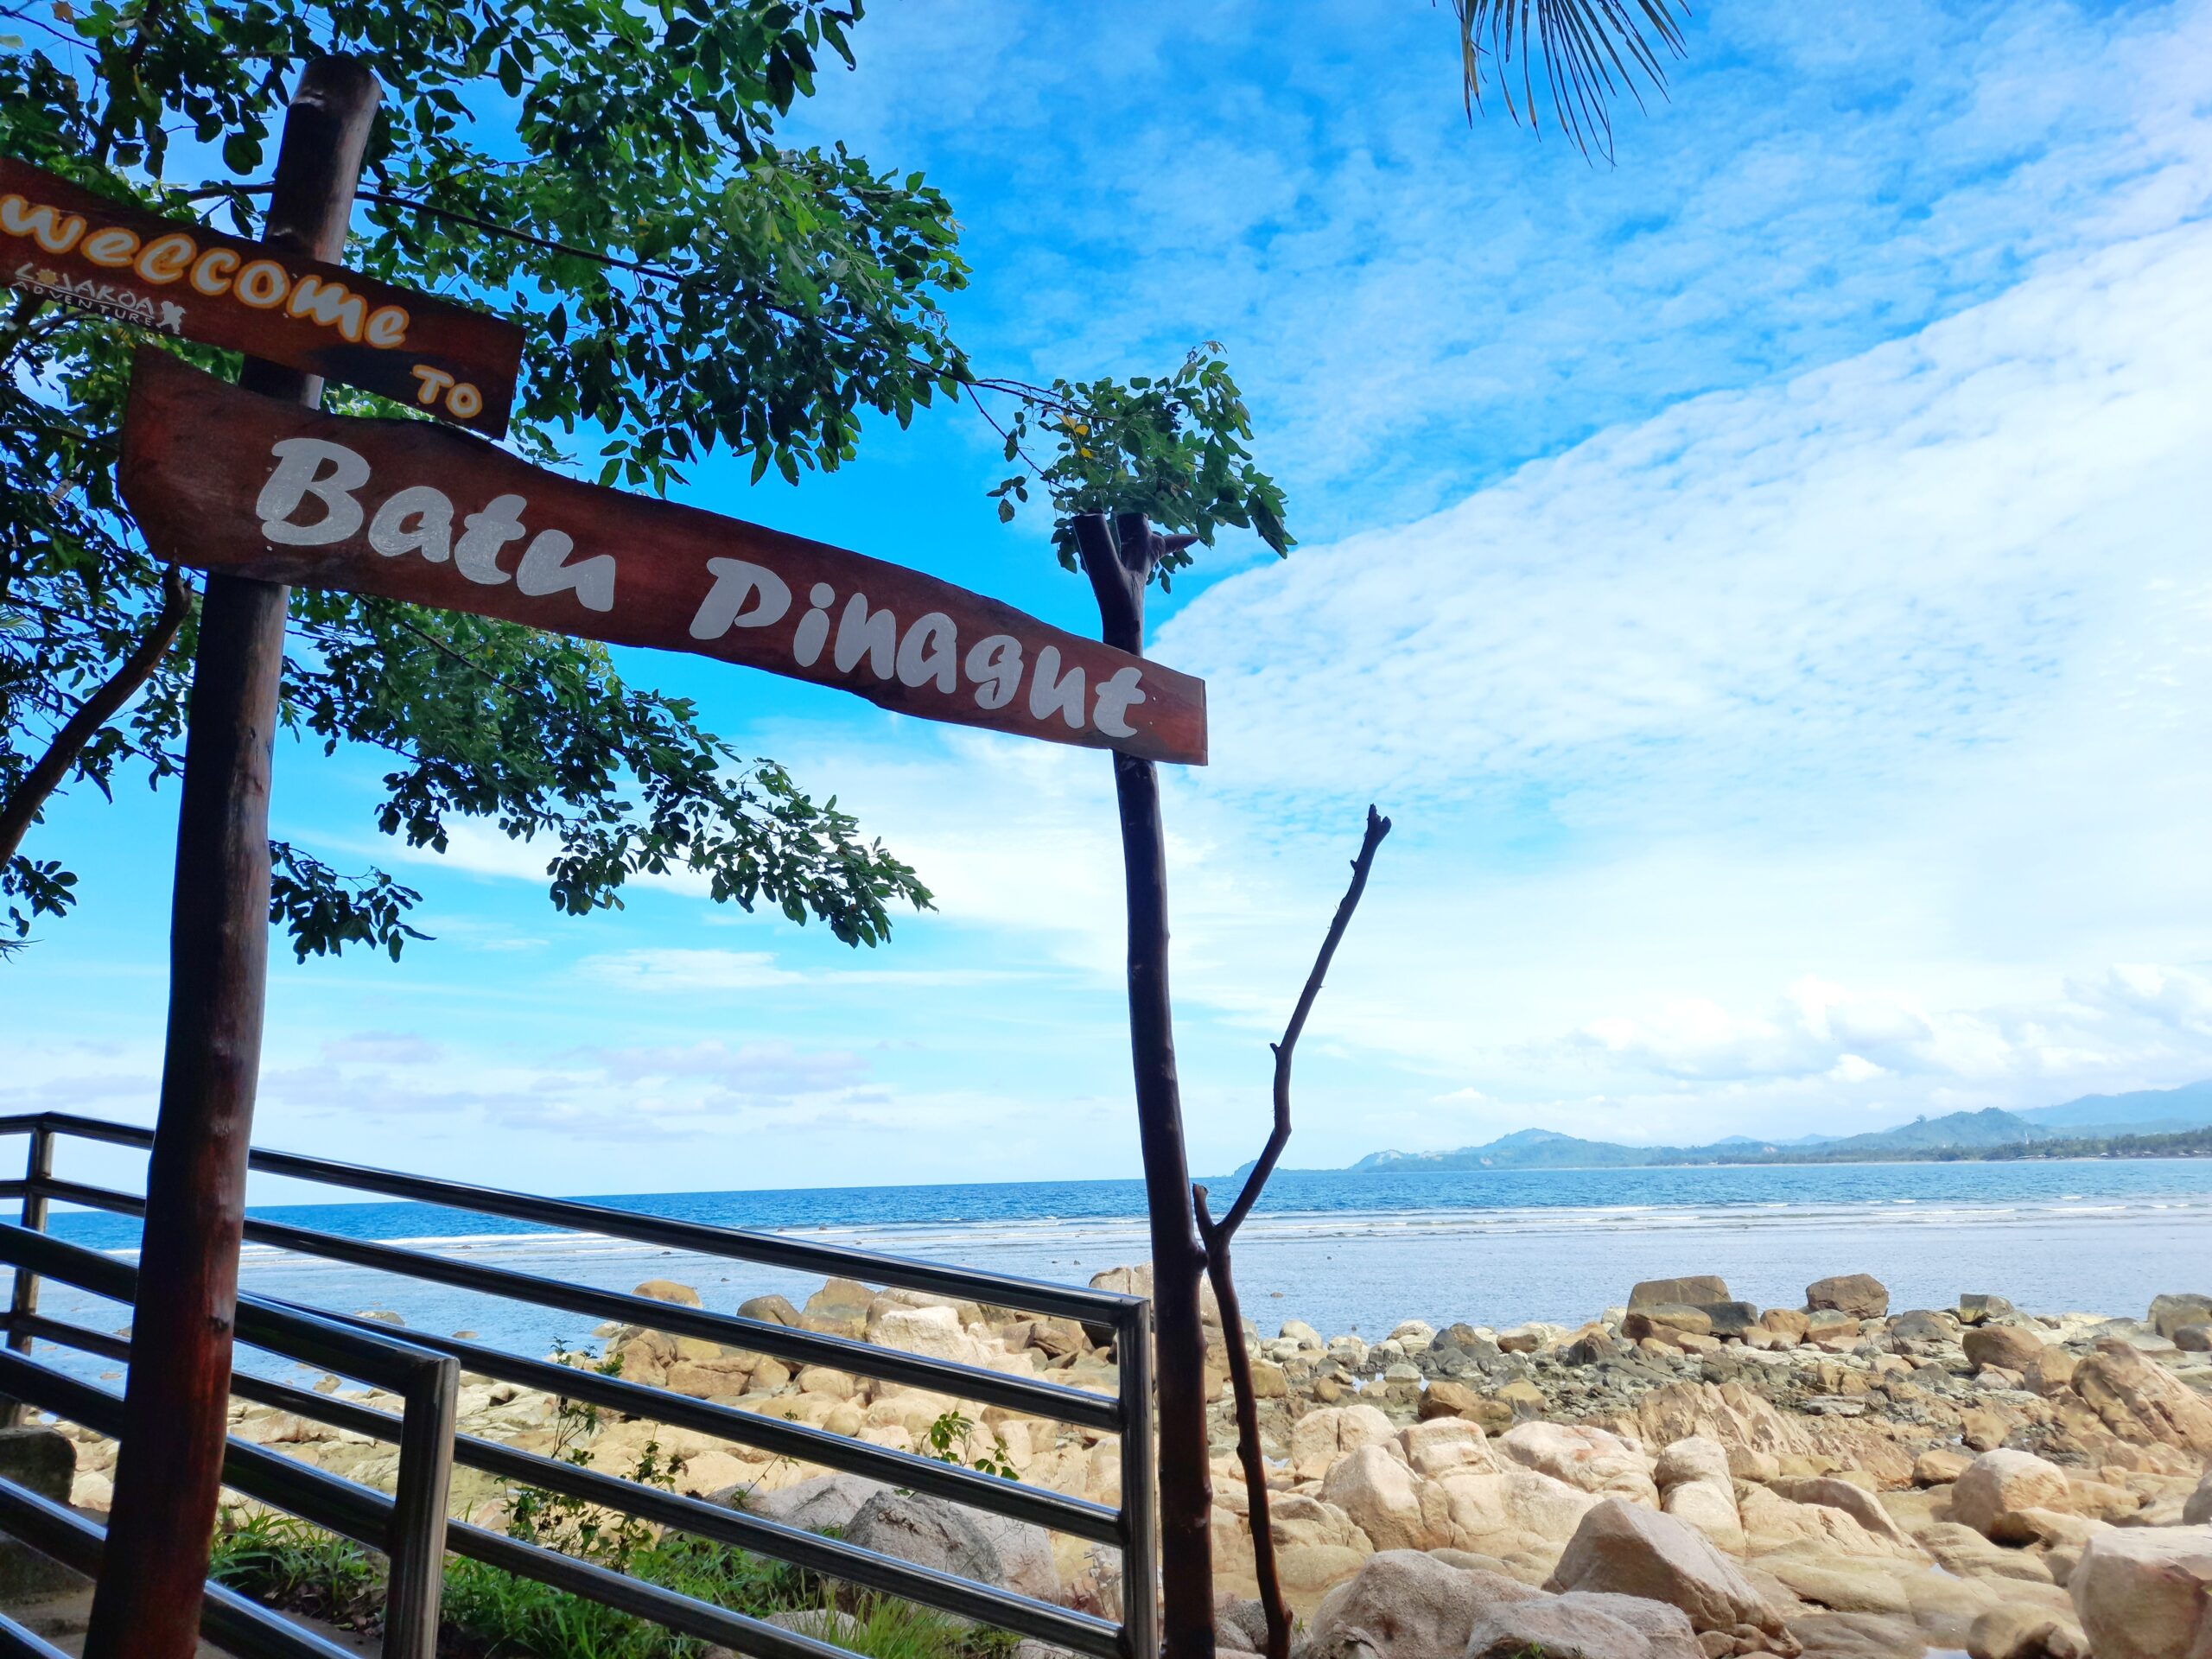 Tempat wisata Pantai Batu Pinagut tetap buka pada libur Nataru. (Foto Fandri Mamonto)